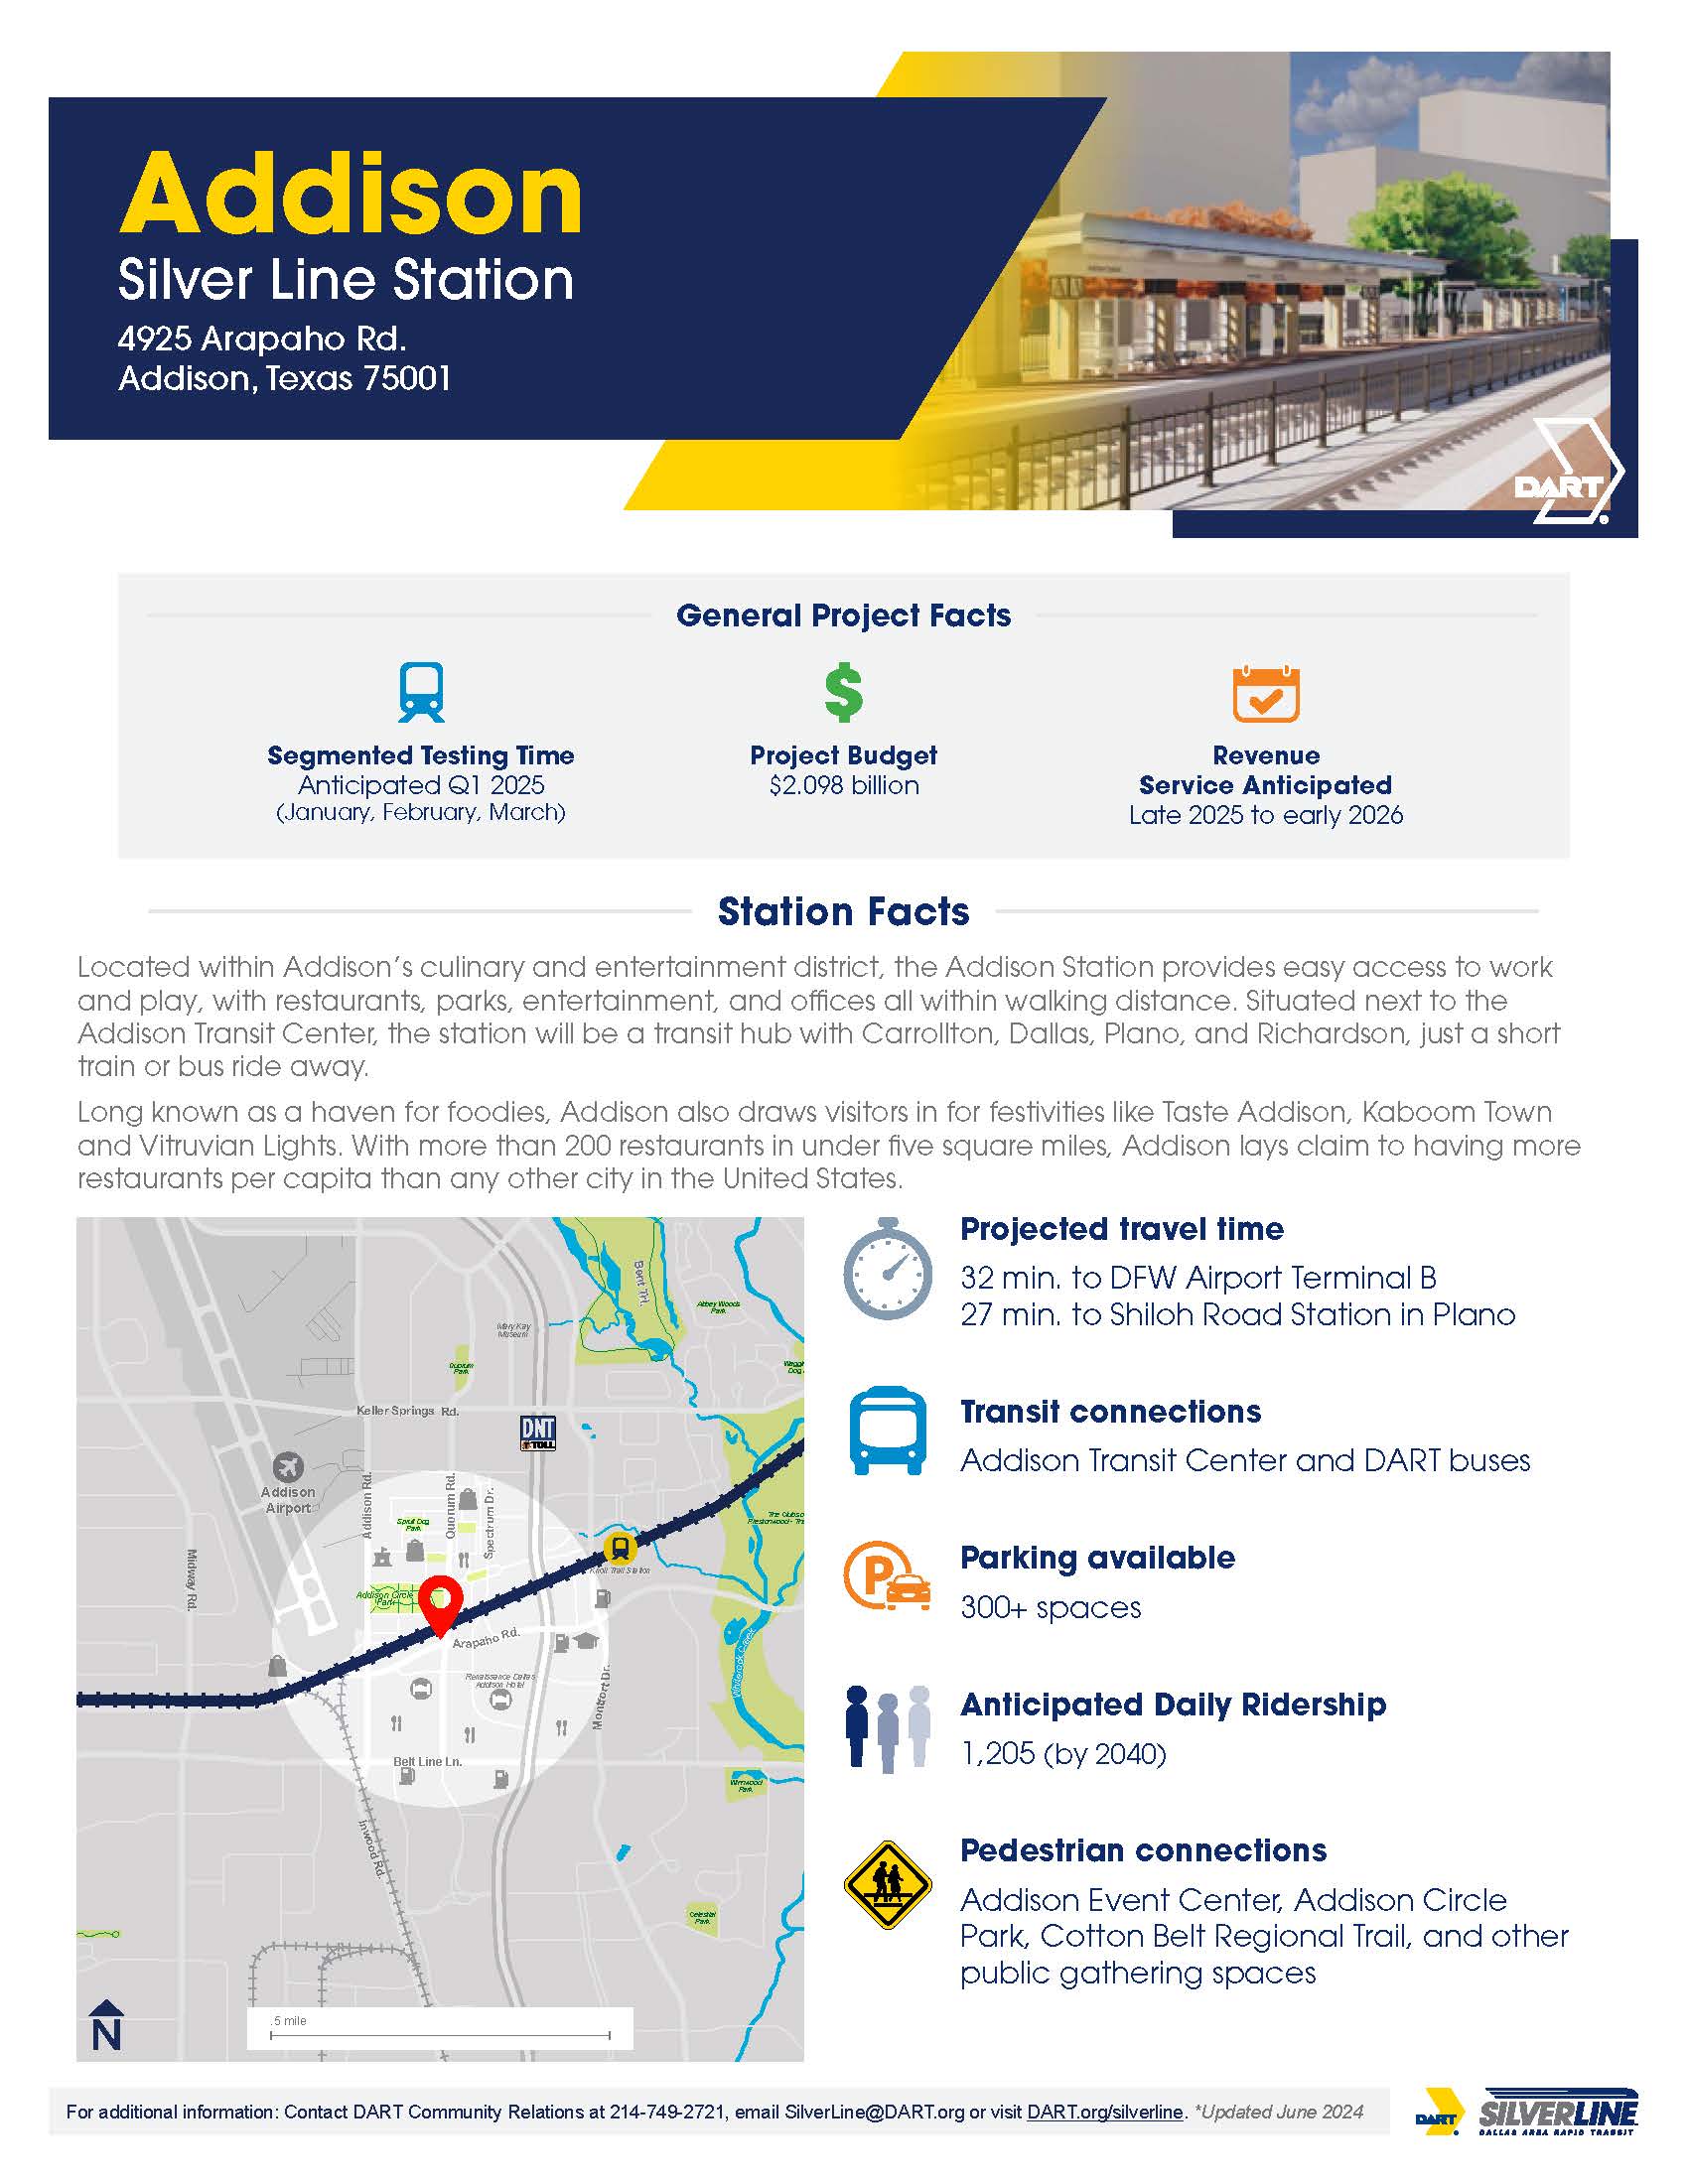 Addison Station Factsheet image